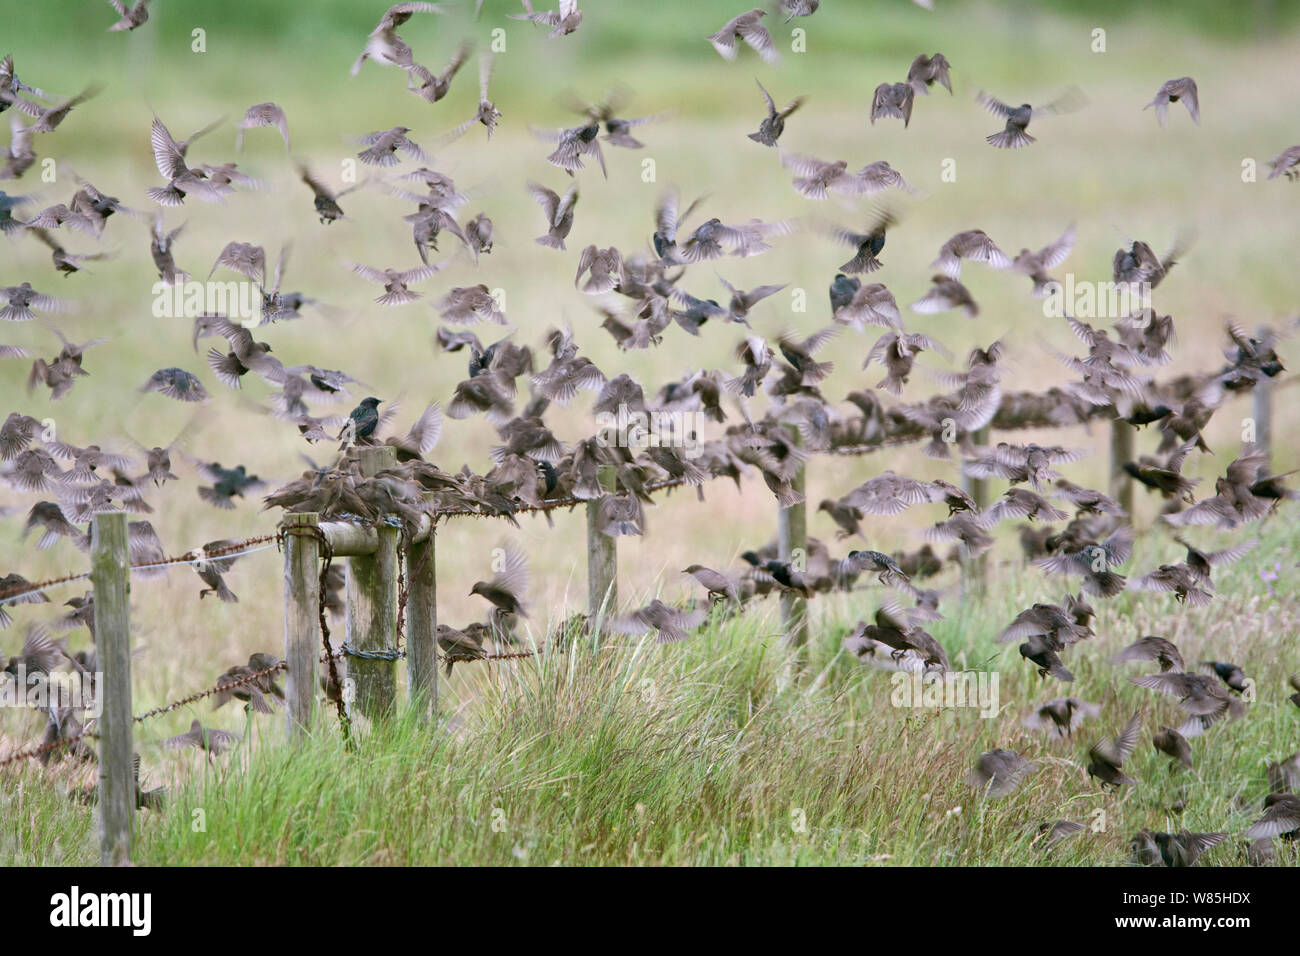 Juvenile Starlings (Sturnus vulgaris) in post breeding flock, Cley, Norfolk, UK, June. Stock Photo